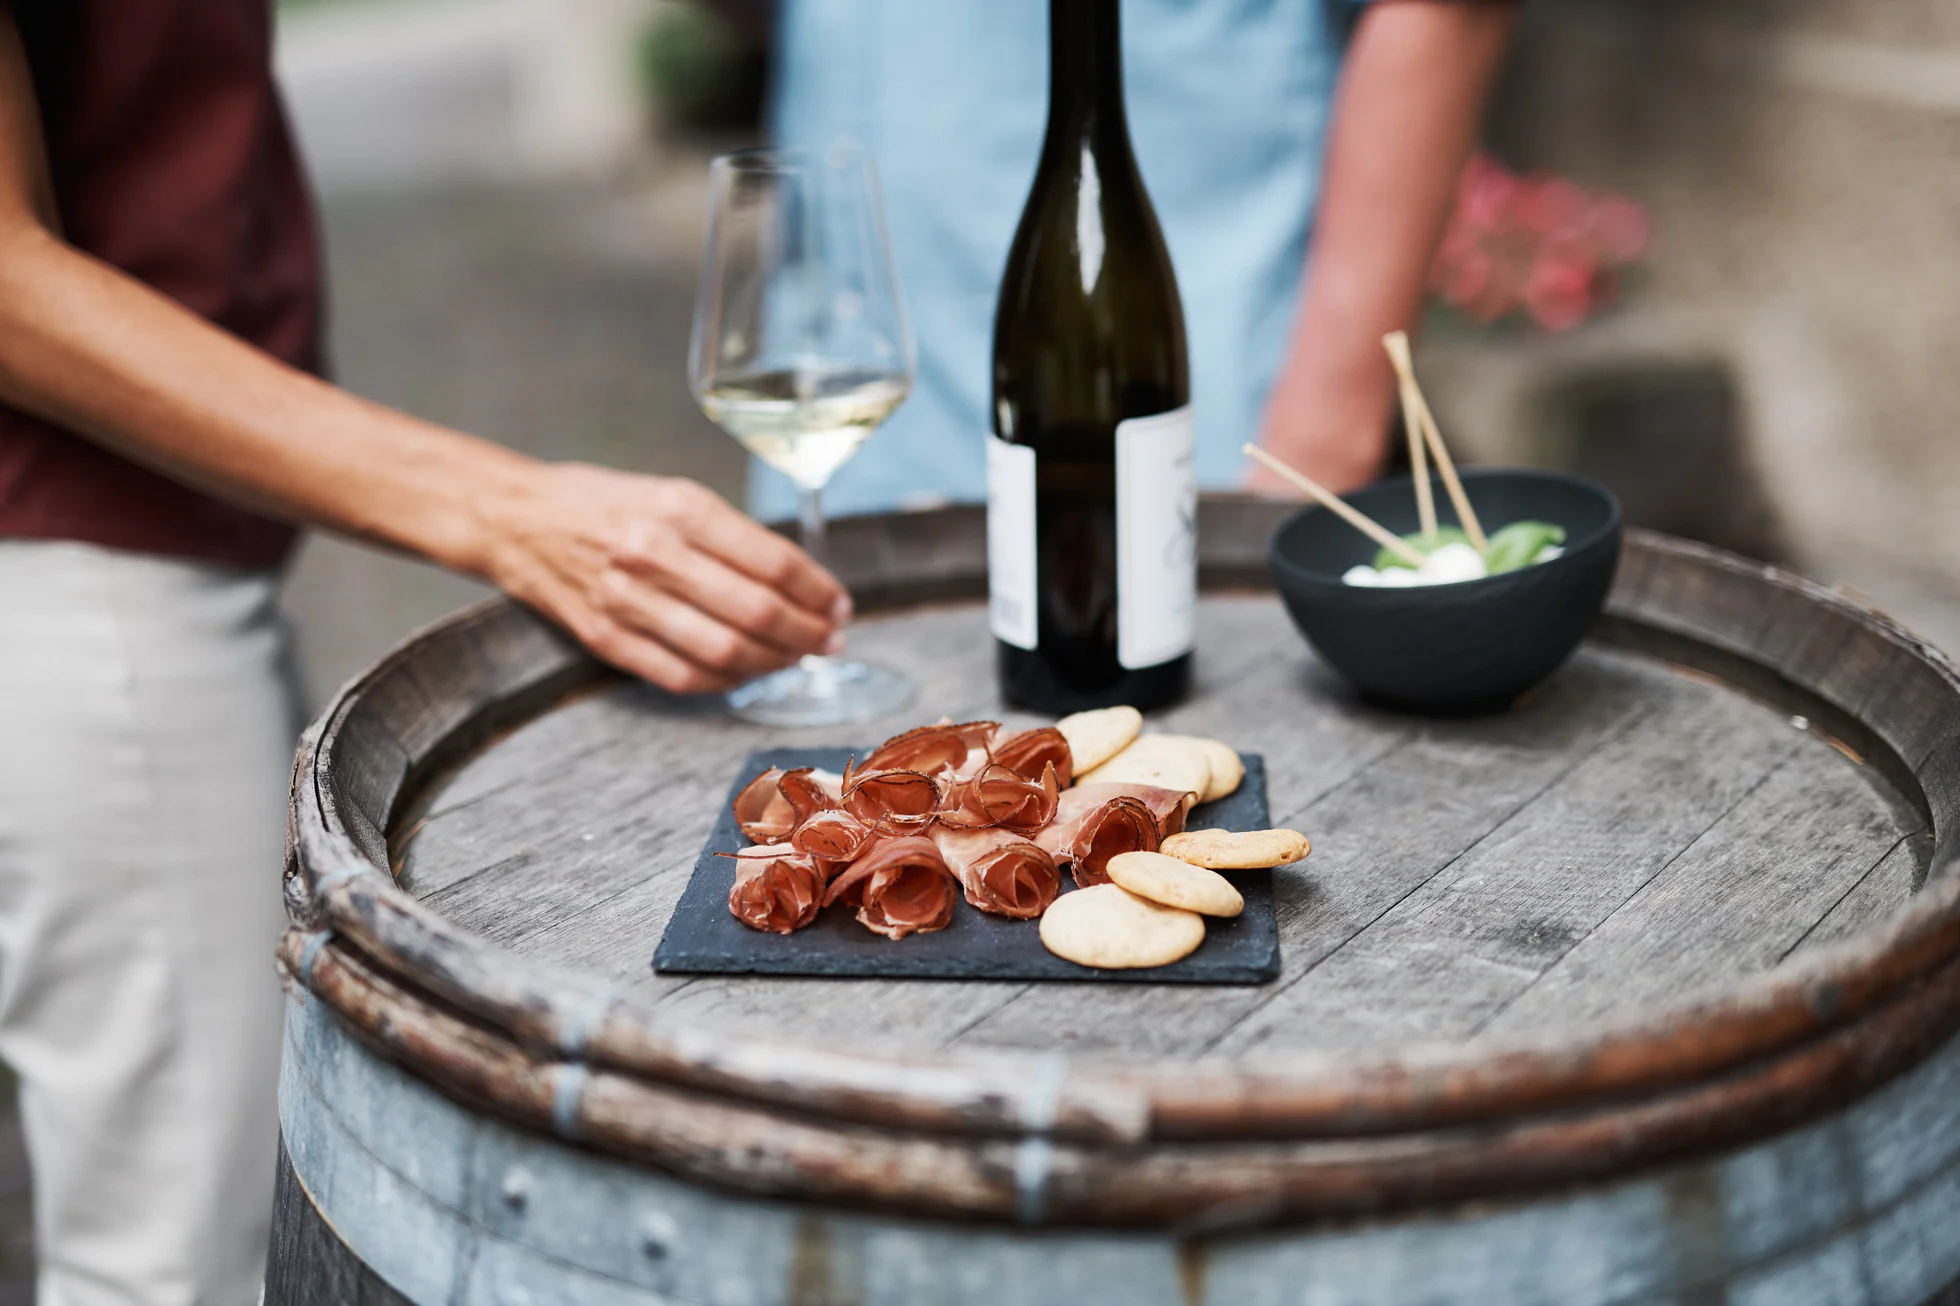 Zwei Personen stehen neben einem Fass auf dem ein Glas Weißwein, eine Flasche Weißwein und eine Platte mit Speck stehen